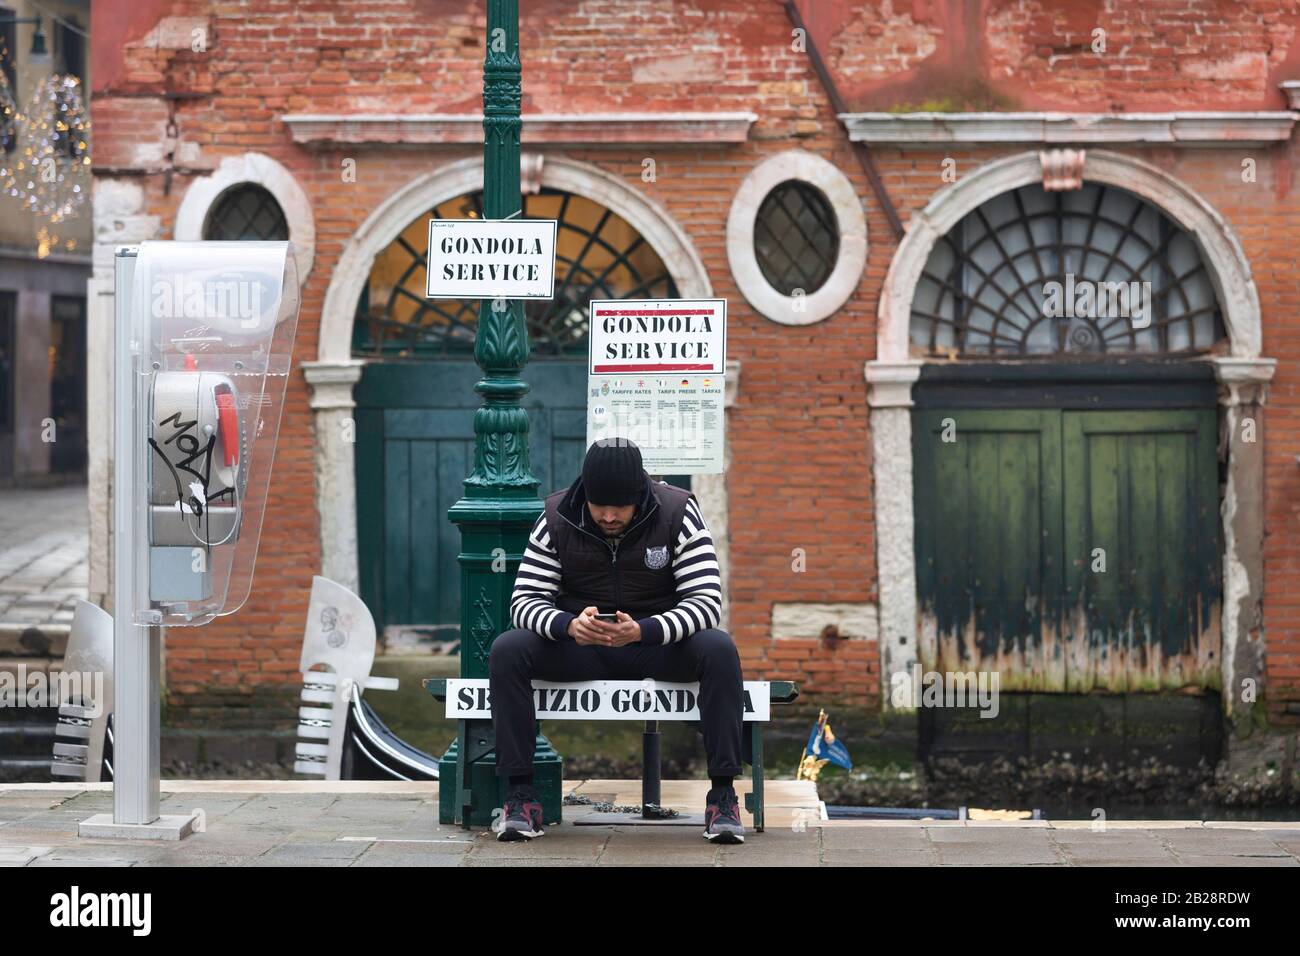 Gondolier est assis sur le côté du canal à Venise et regarde son téléphone. Prise en janvier 2020. Banque D'Images